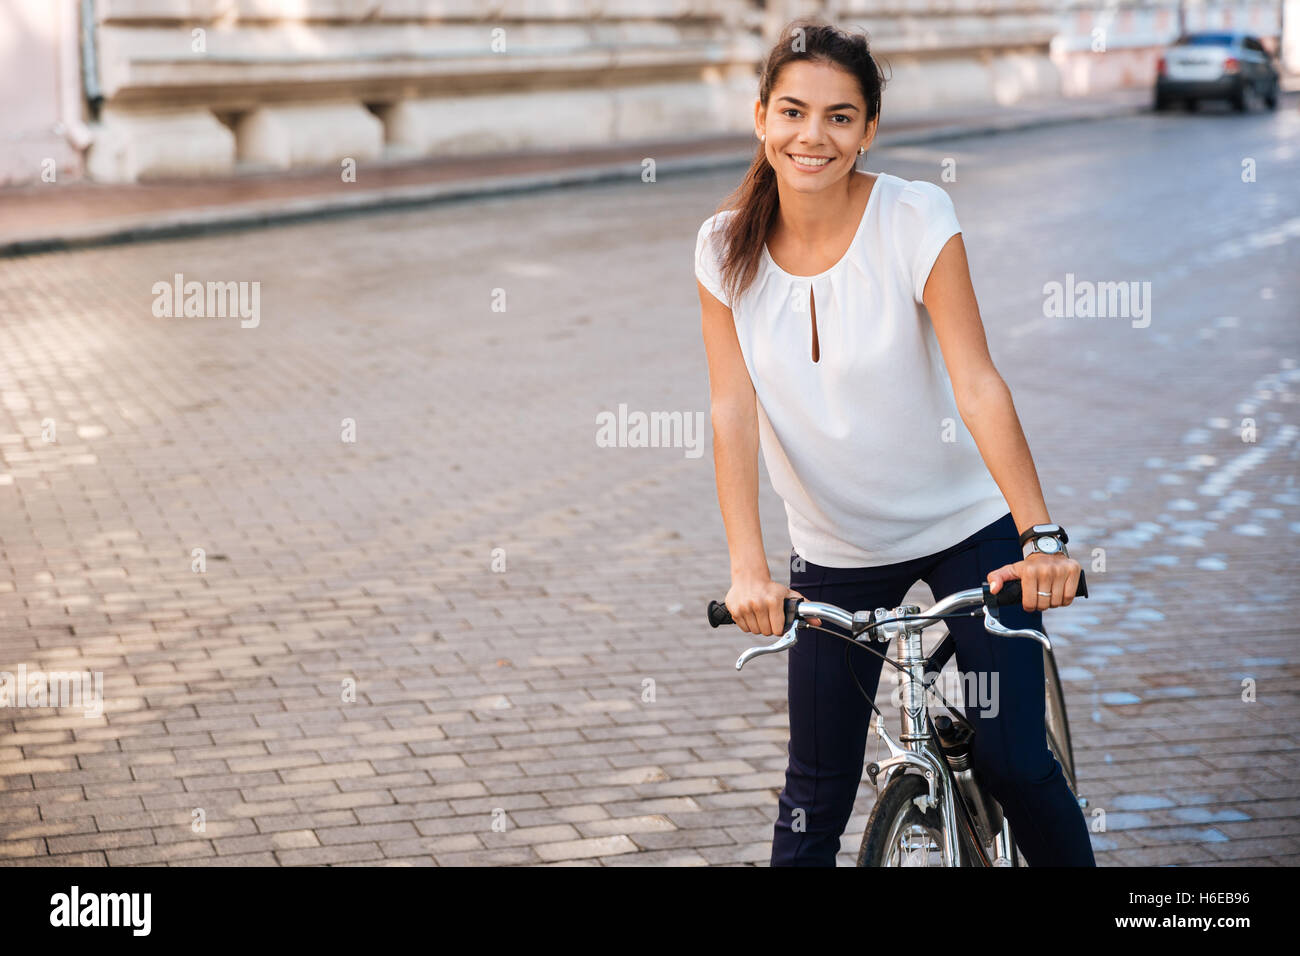 Retrato de una mujer bonita montando en bicicleta en las calles de la ciudad y mirando a la cámara Foto de stock